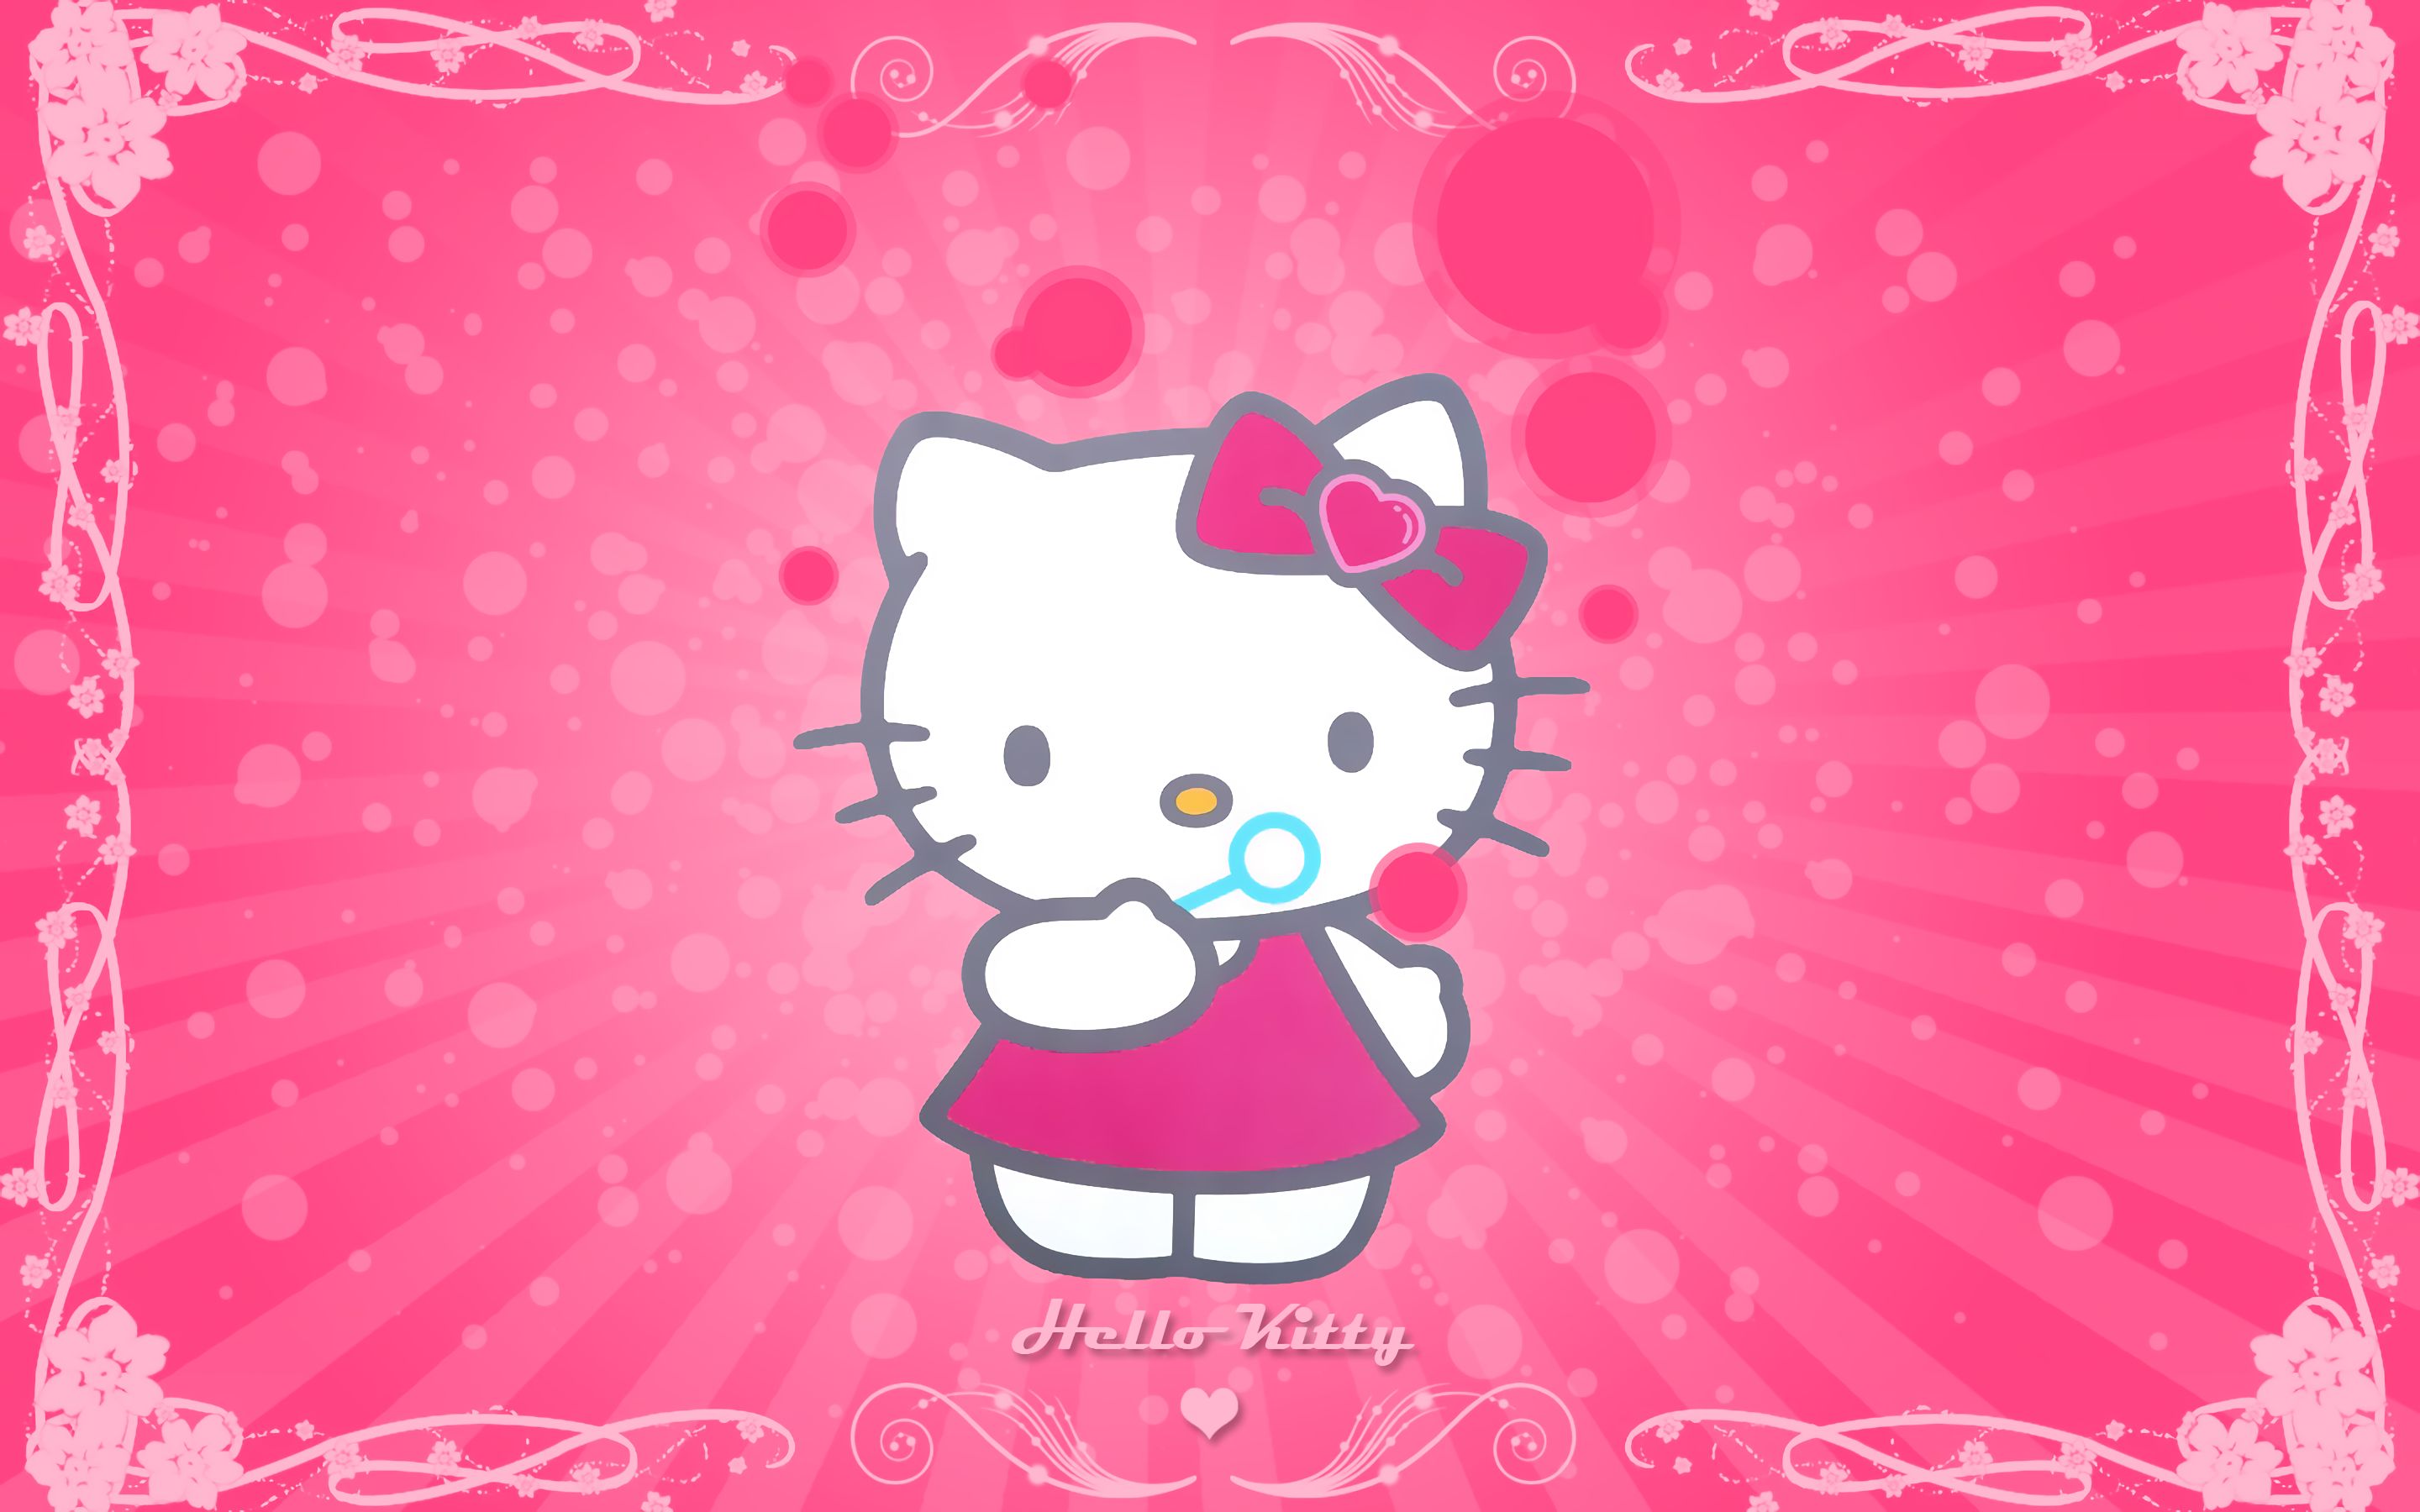 Laden Sie Hello Kitty HD-Desktop-Hintergründe herunter